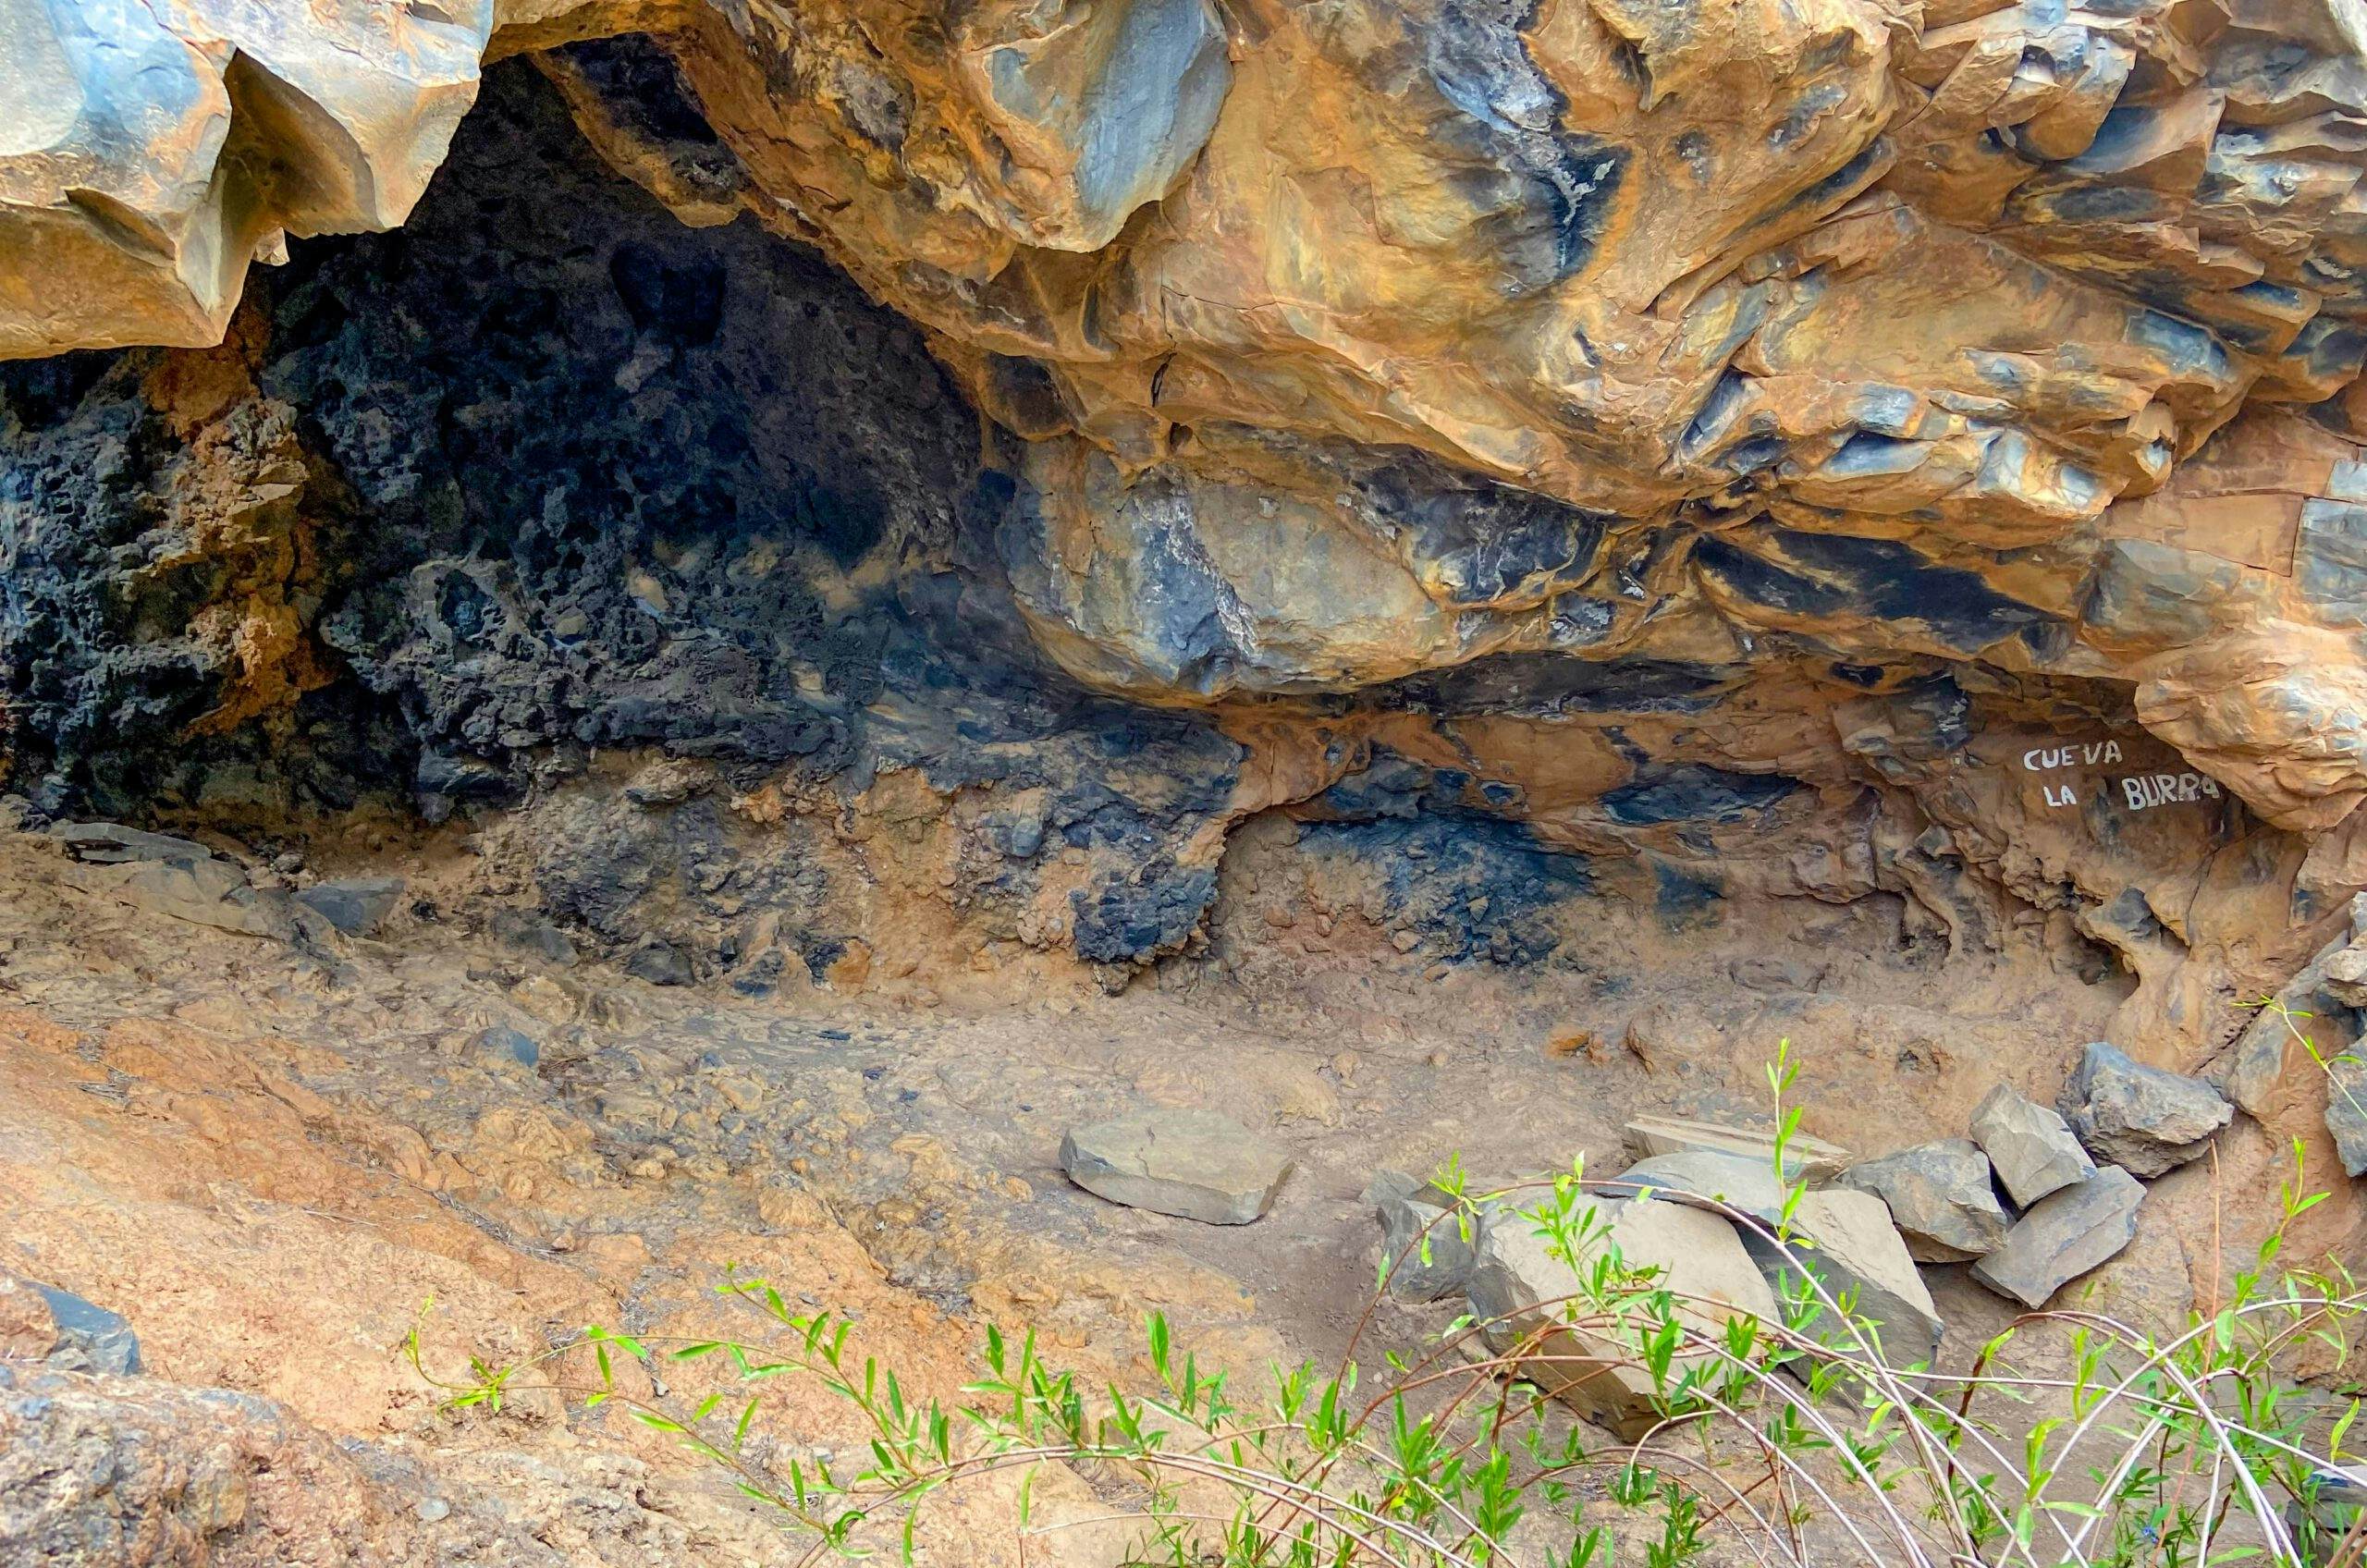 Small cave below a rock face - Cueva La Burra